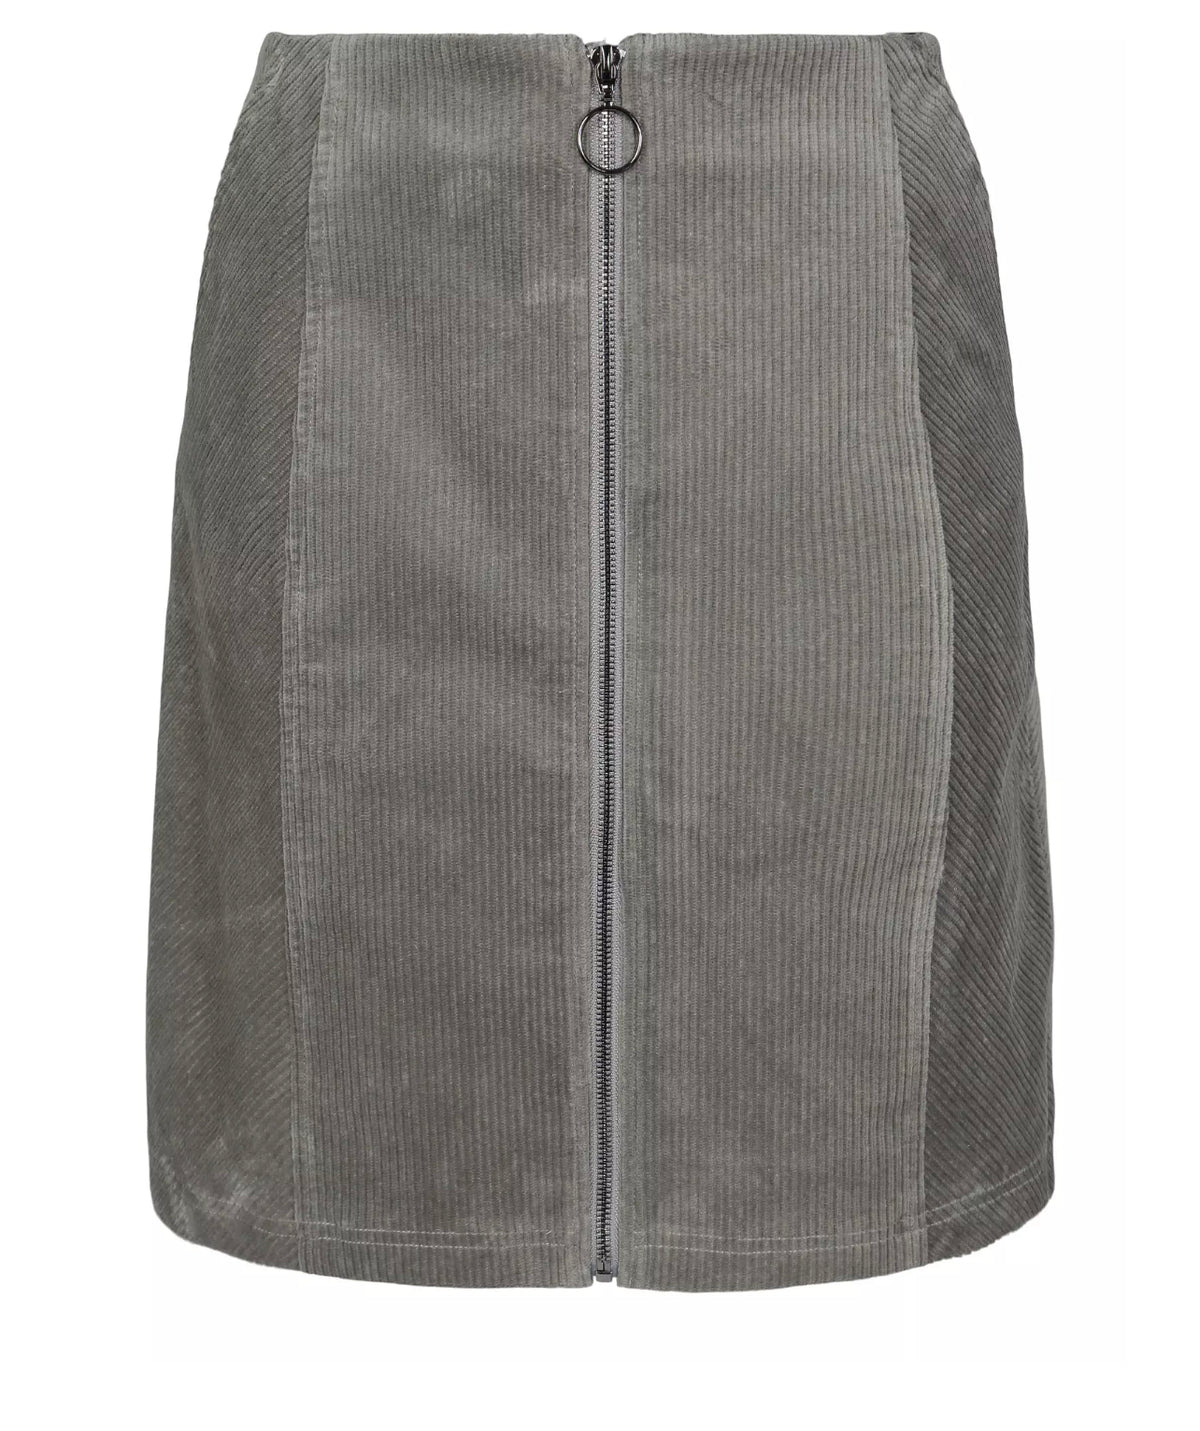 A-shape zip skirt Green